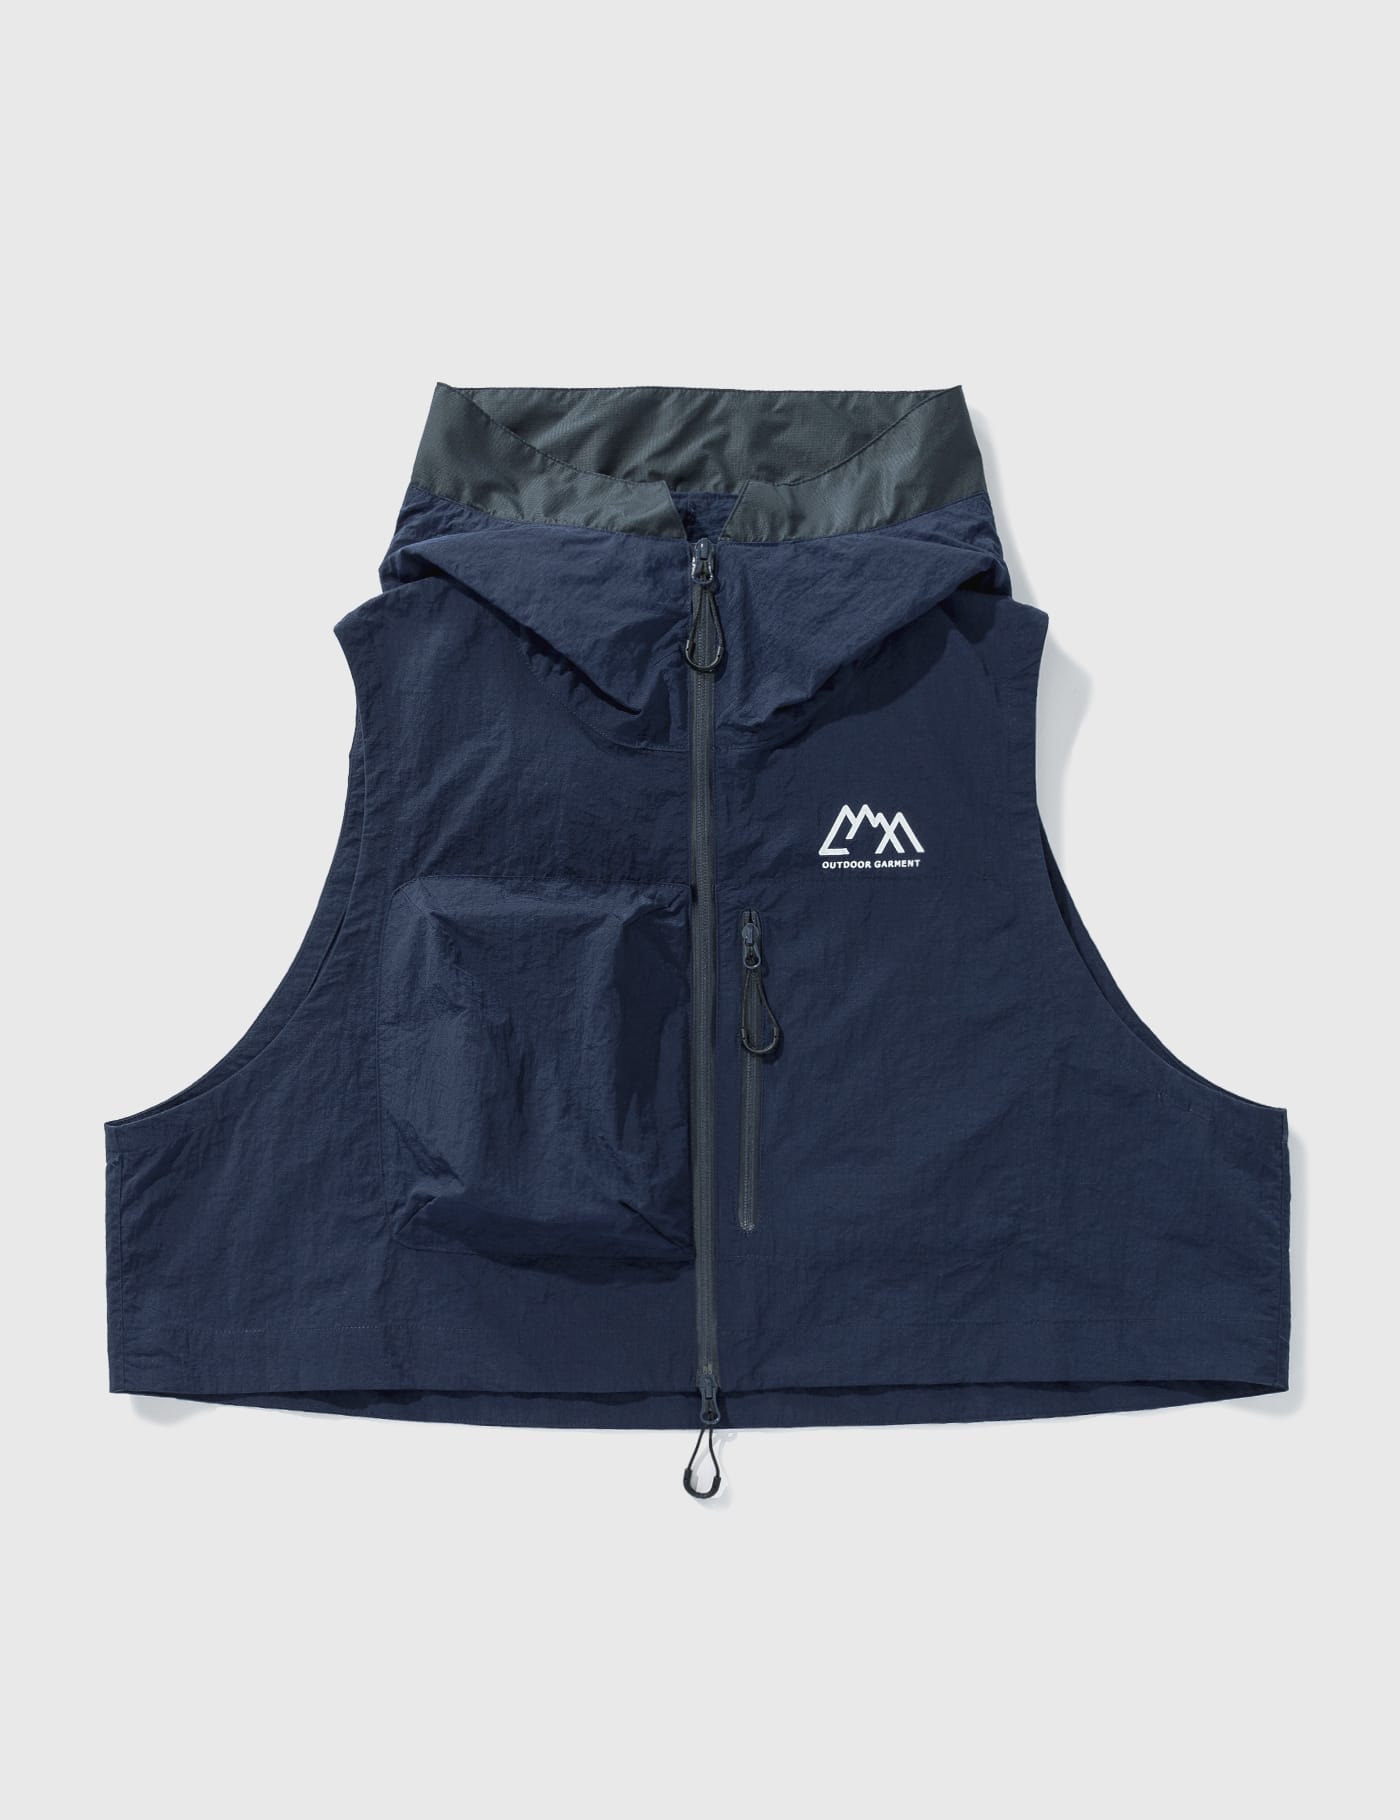 Comfy Outdoor Garment - ファントム ナイロン ベスト | HBX - ハイプ ...